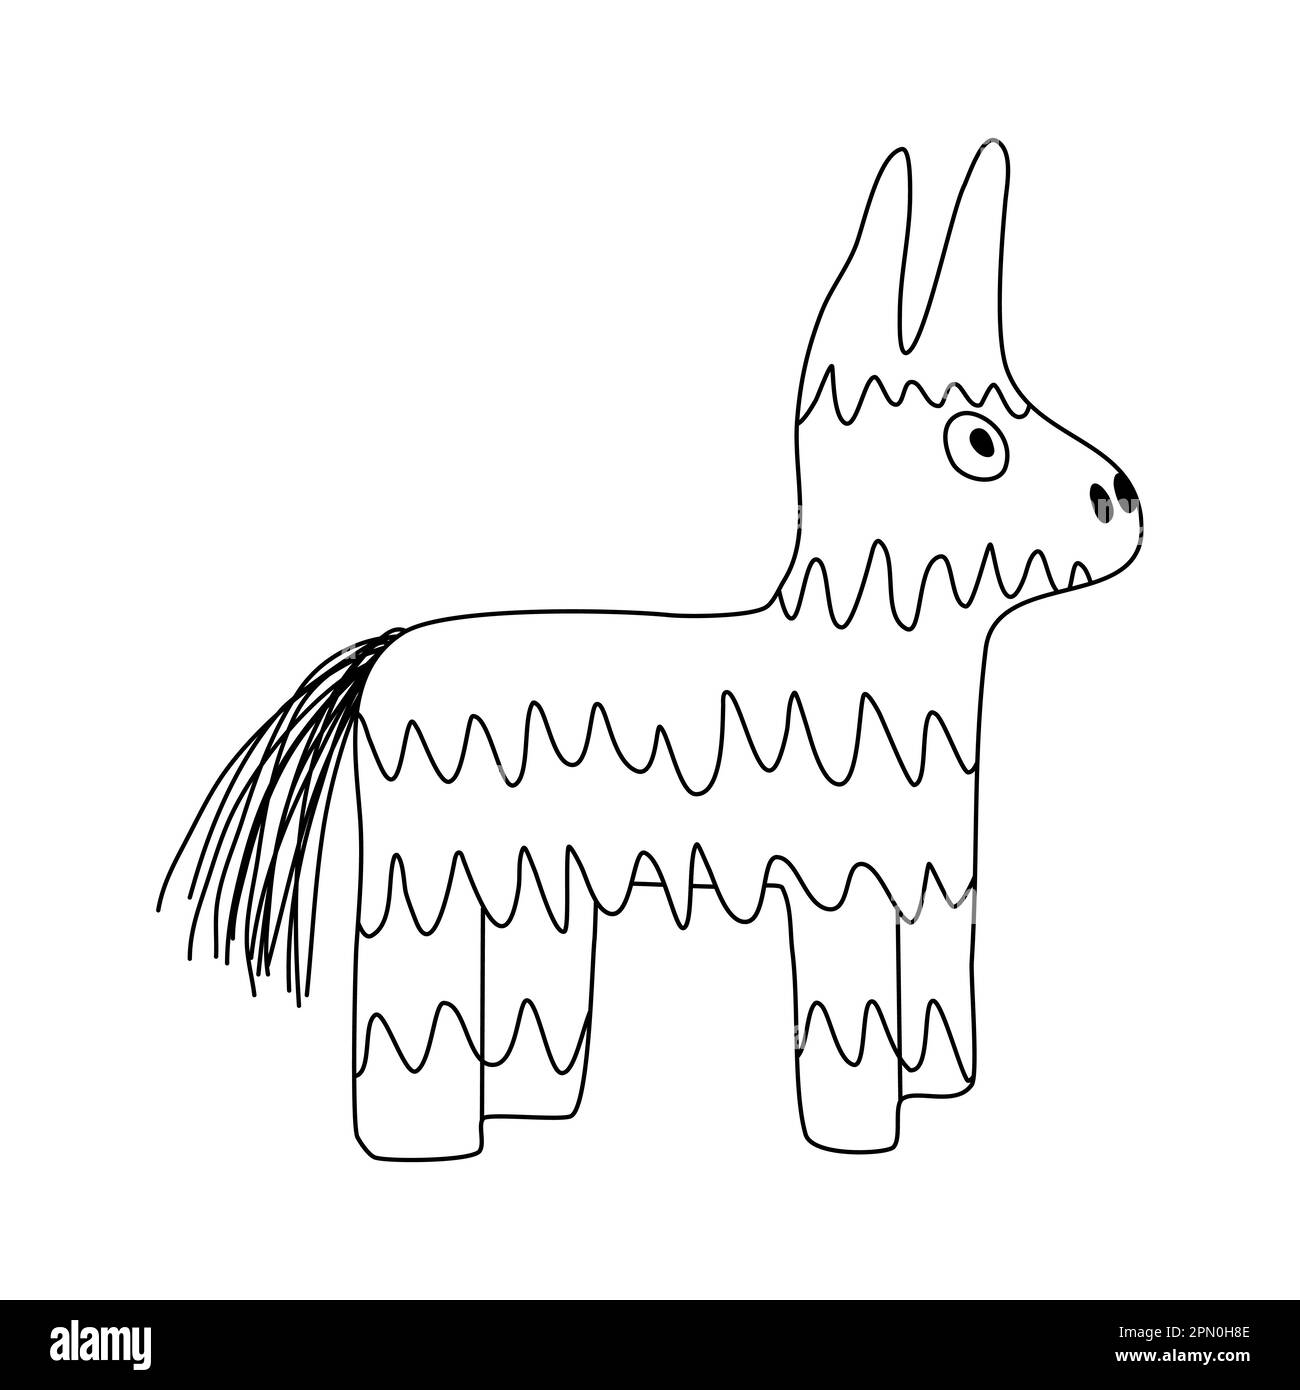 Mexikanischer Pinata-Esel oder Lama, farbenfrohes Spielzeug mit Leckereien für Kindergeburtstage oder Partyfeier, flache Vektorzeichnung im Kritzelstil für Kinder Malbuch Stock Vektor